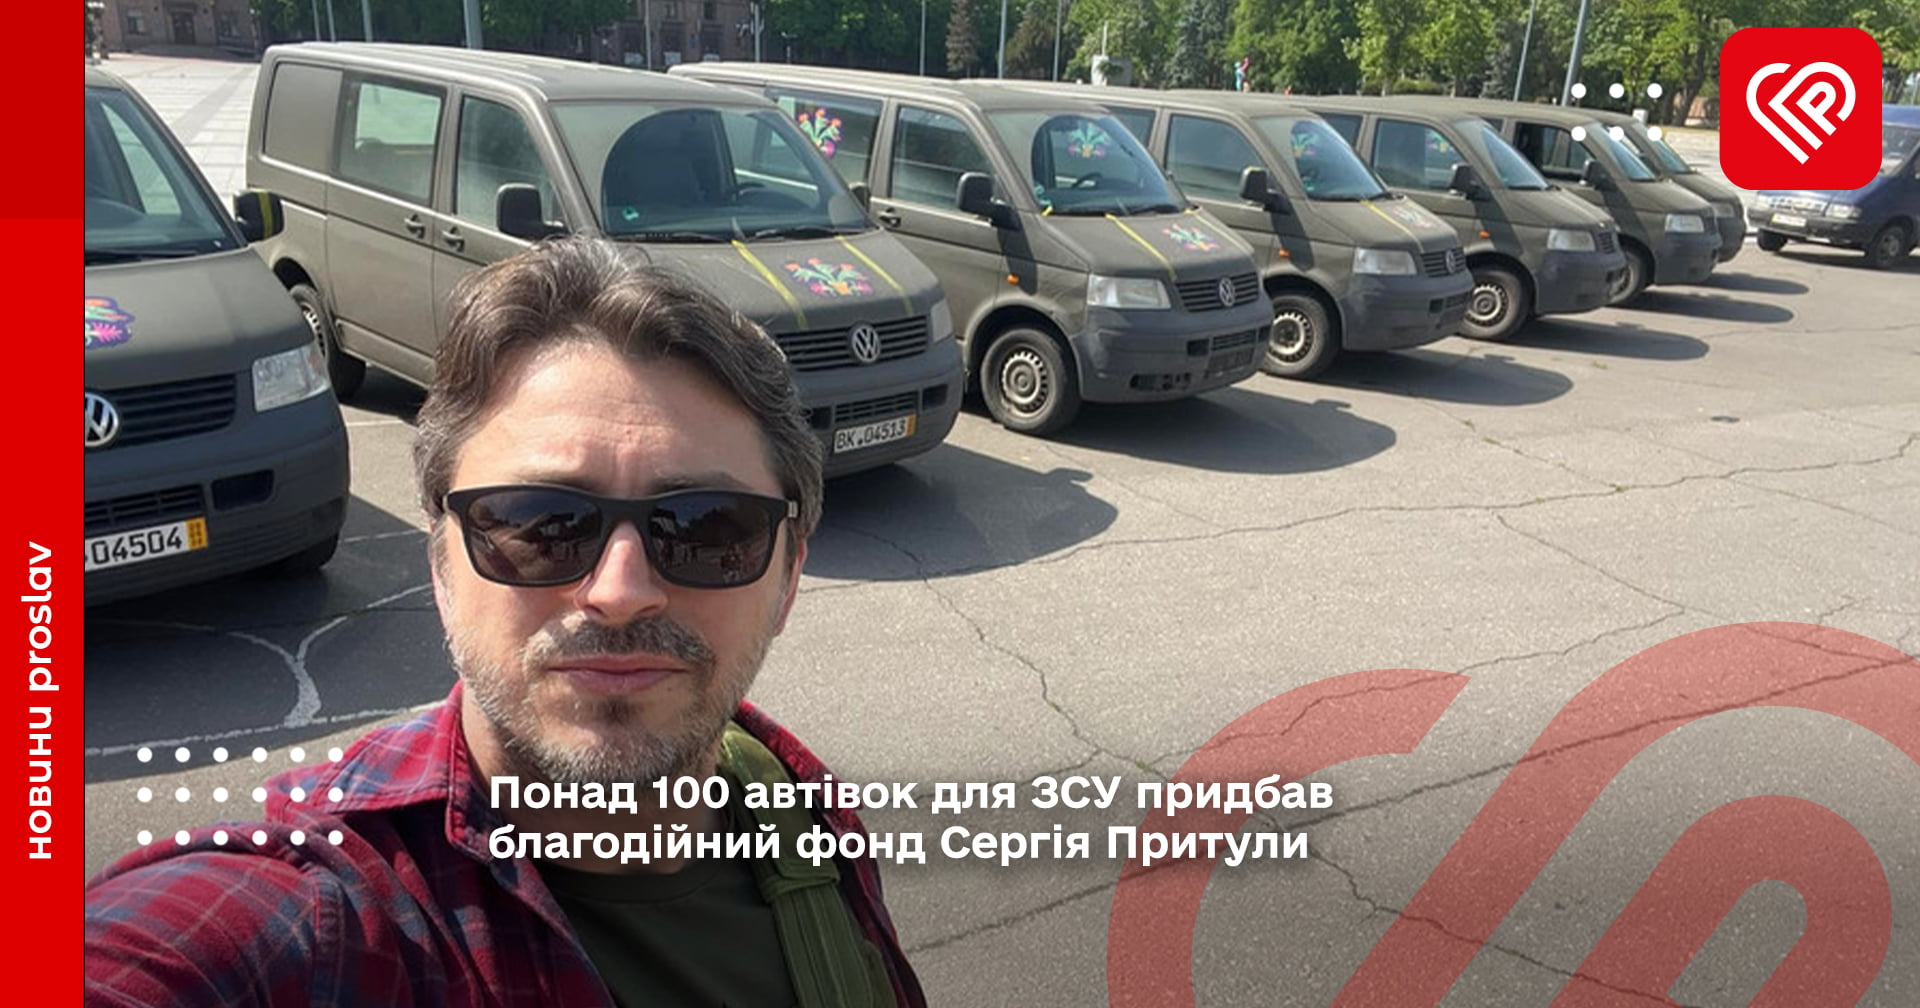 Понад 100 автівок для ЗСУ придбав благодійний фонд Сергія Притули